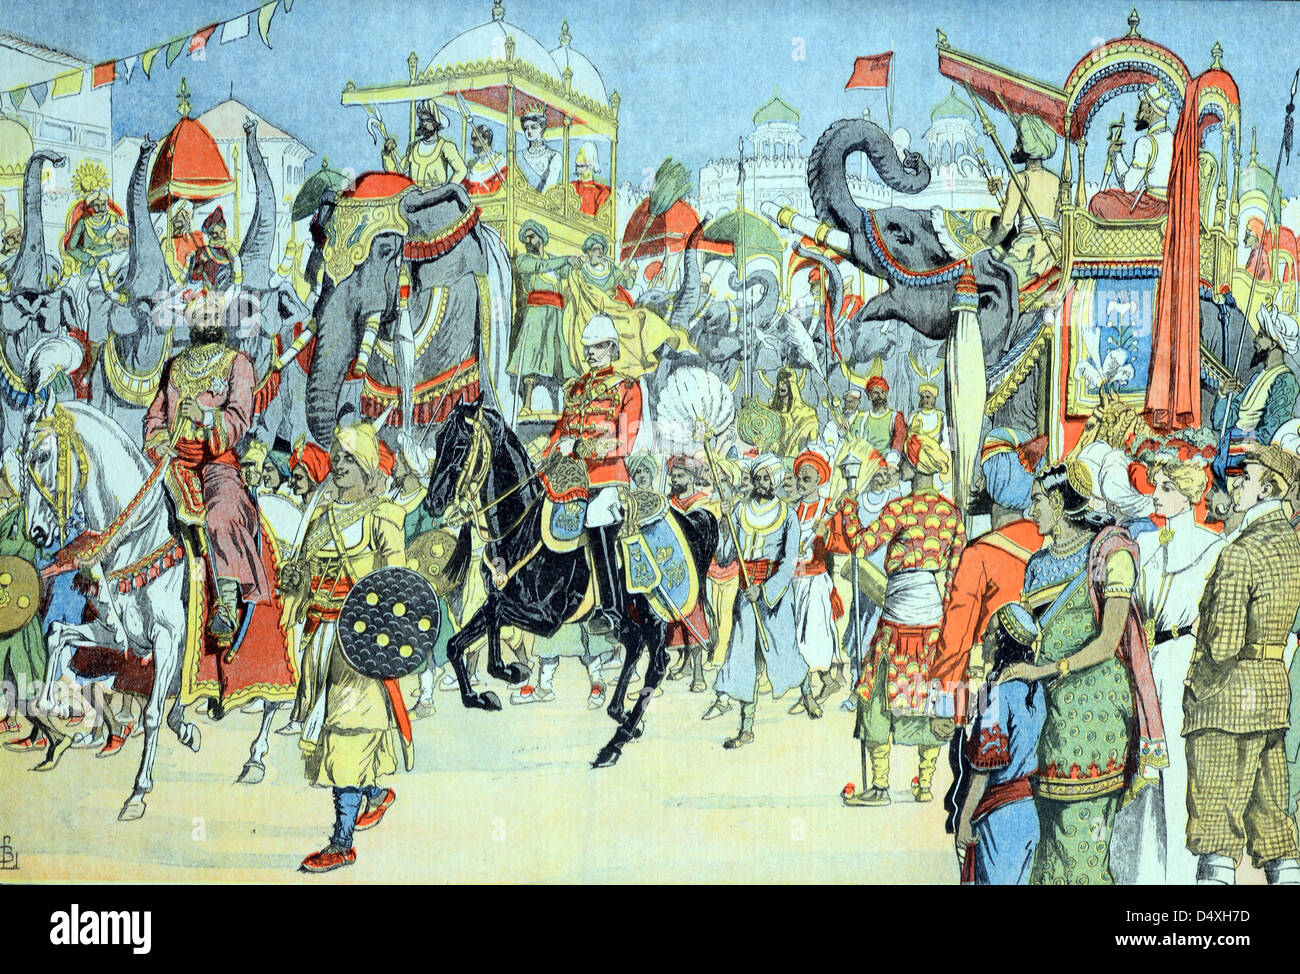 Cérémonie du Durbar de Delhi, rencontre du Durbar impérial ou du Cérémonial pendant la règle britannique en Inde (janvier 1903) Gravure ou illustration d'époque Banque D'Images